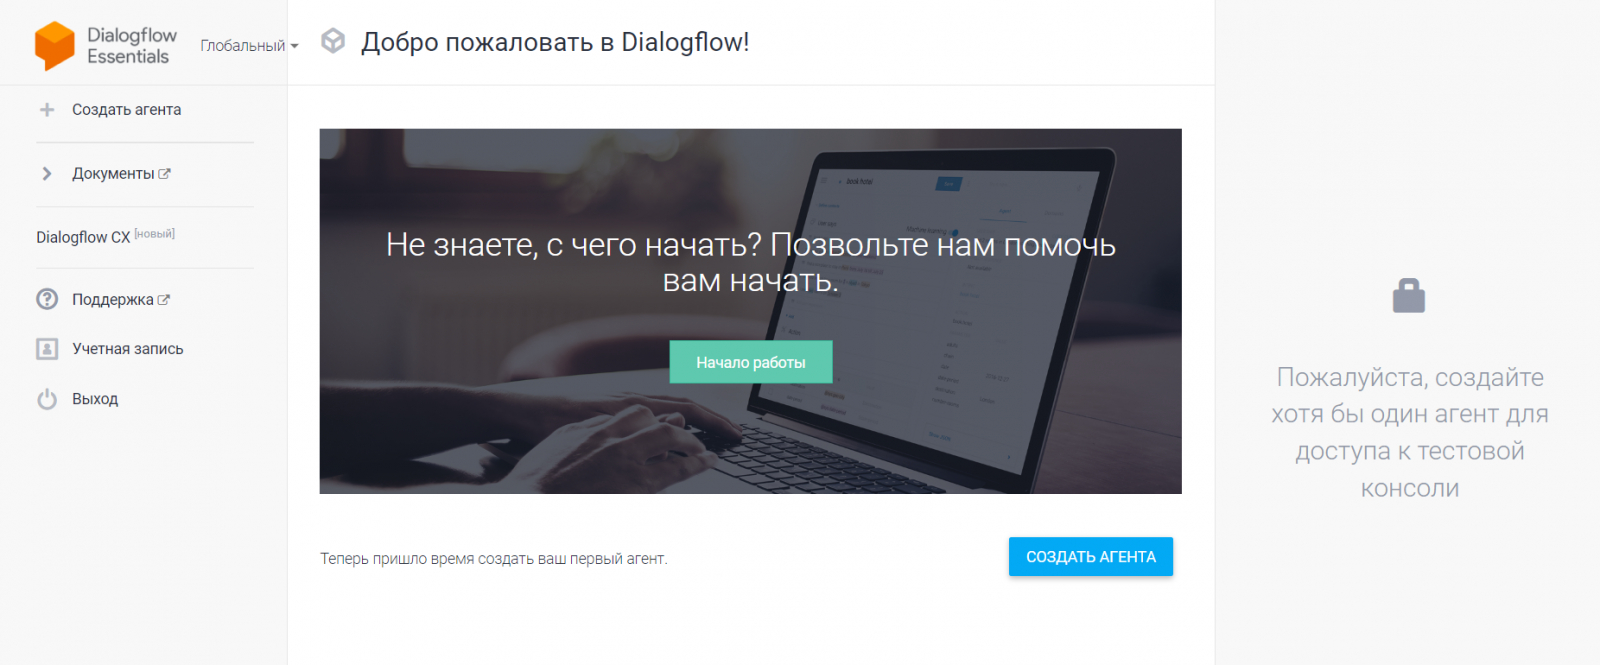 Конструктор Dialogflow